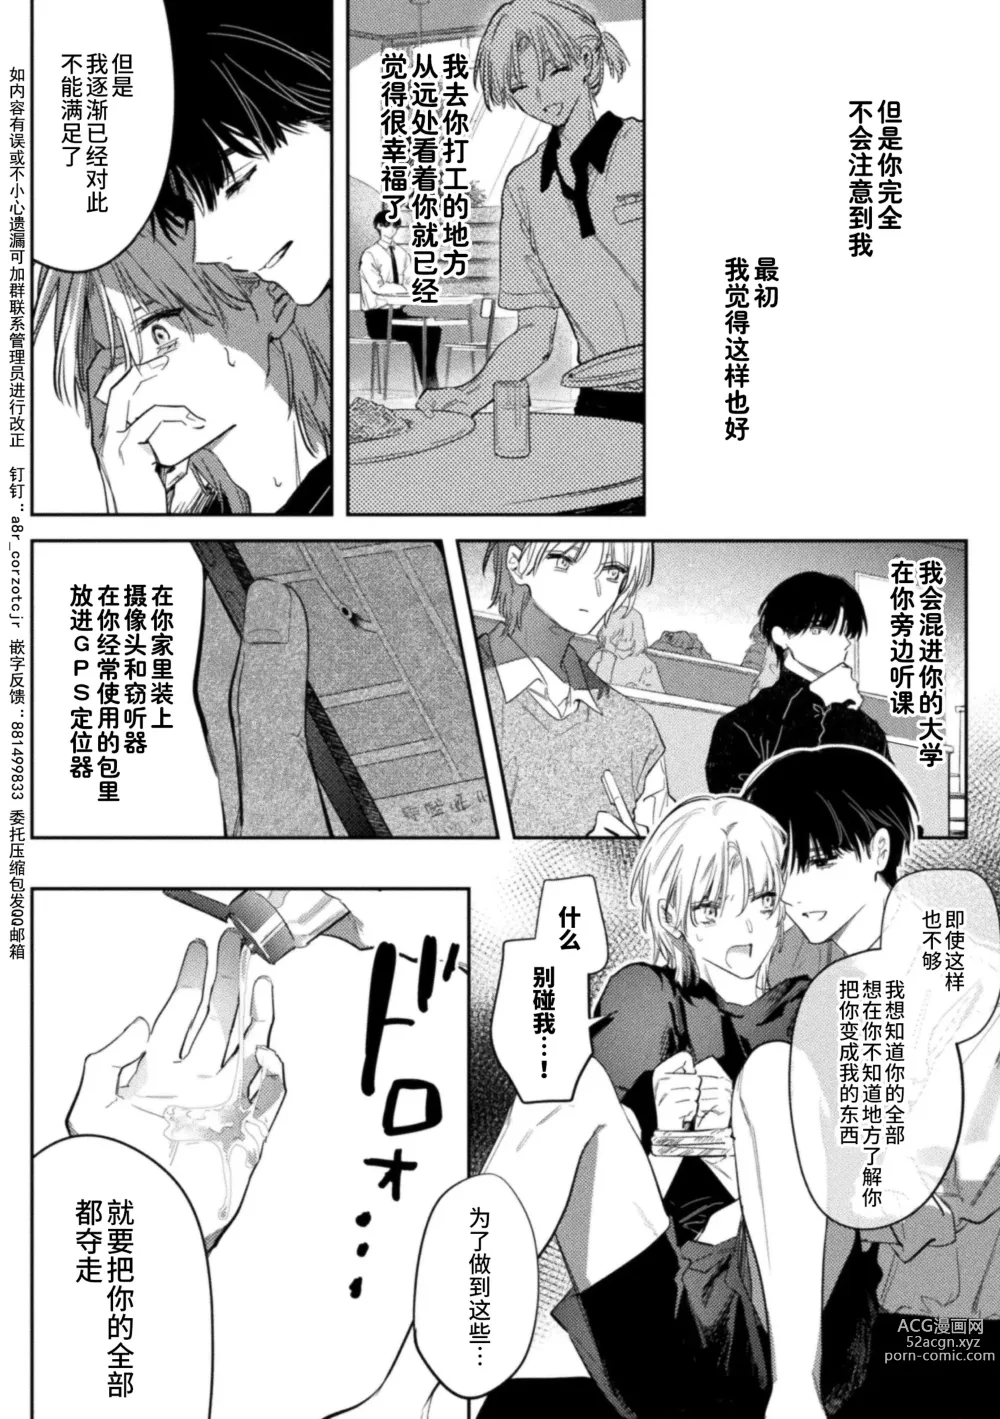 Page 9 of manga Kore ga Ainara xnde Kure Zenpen+Kouhen